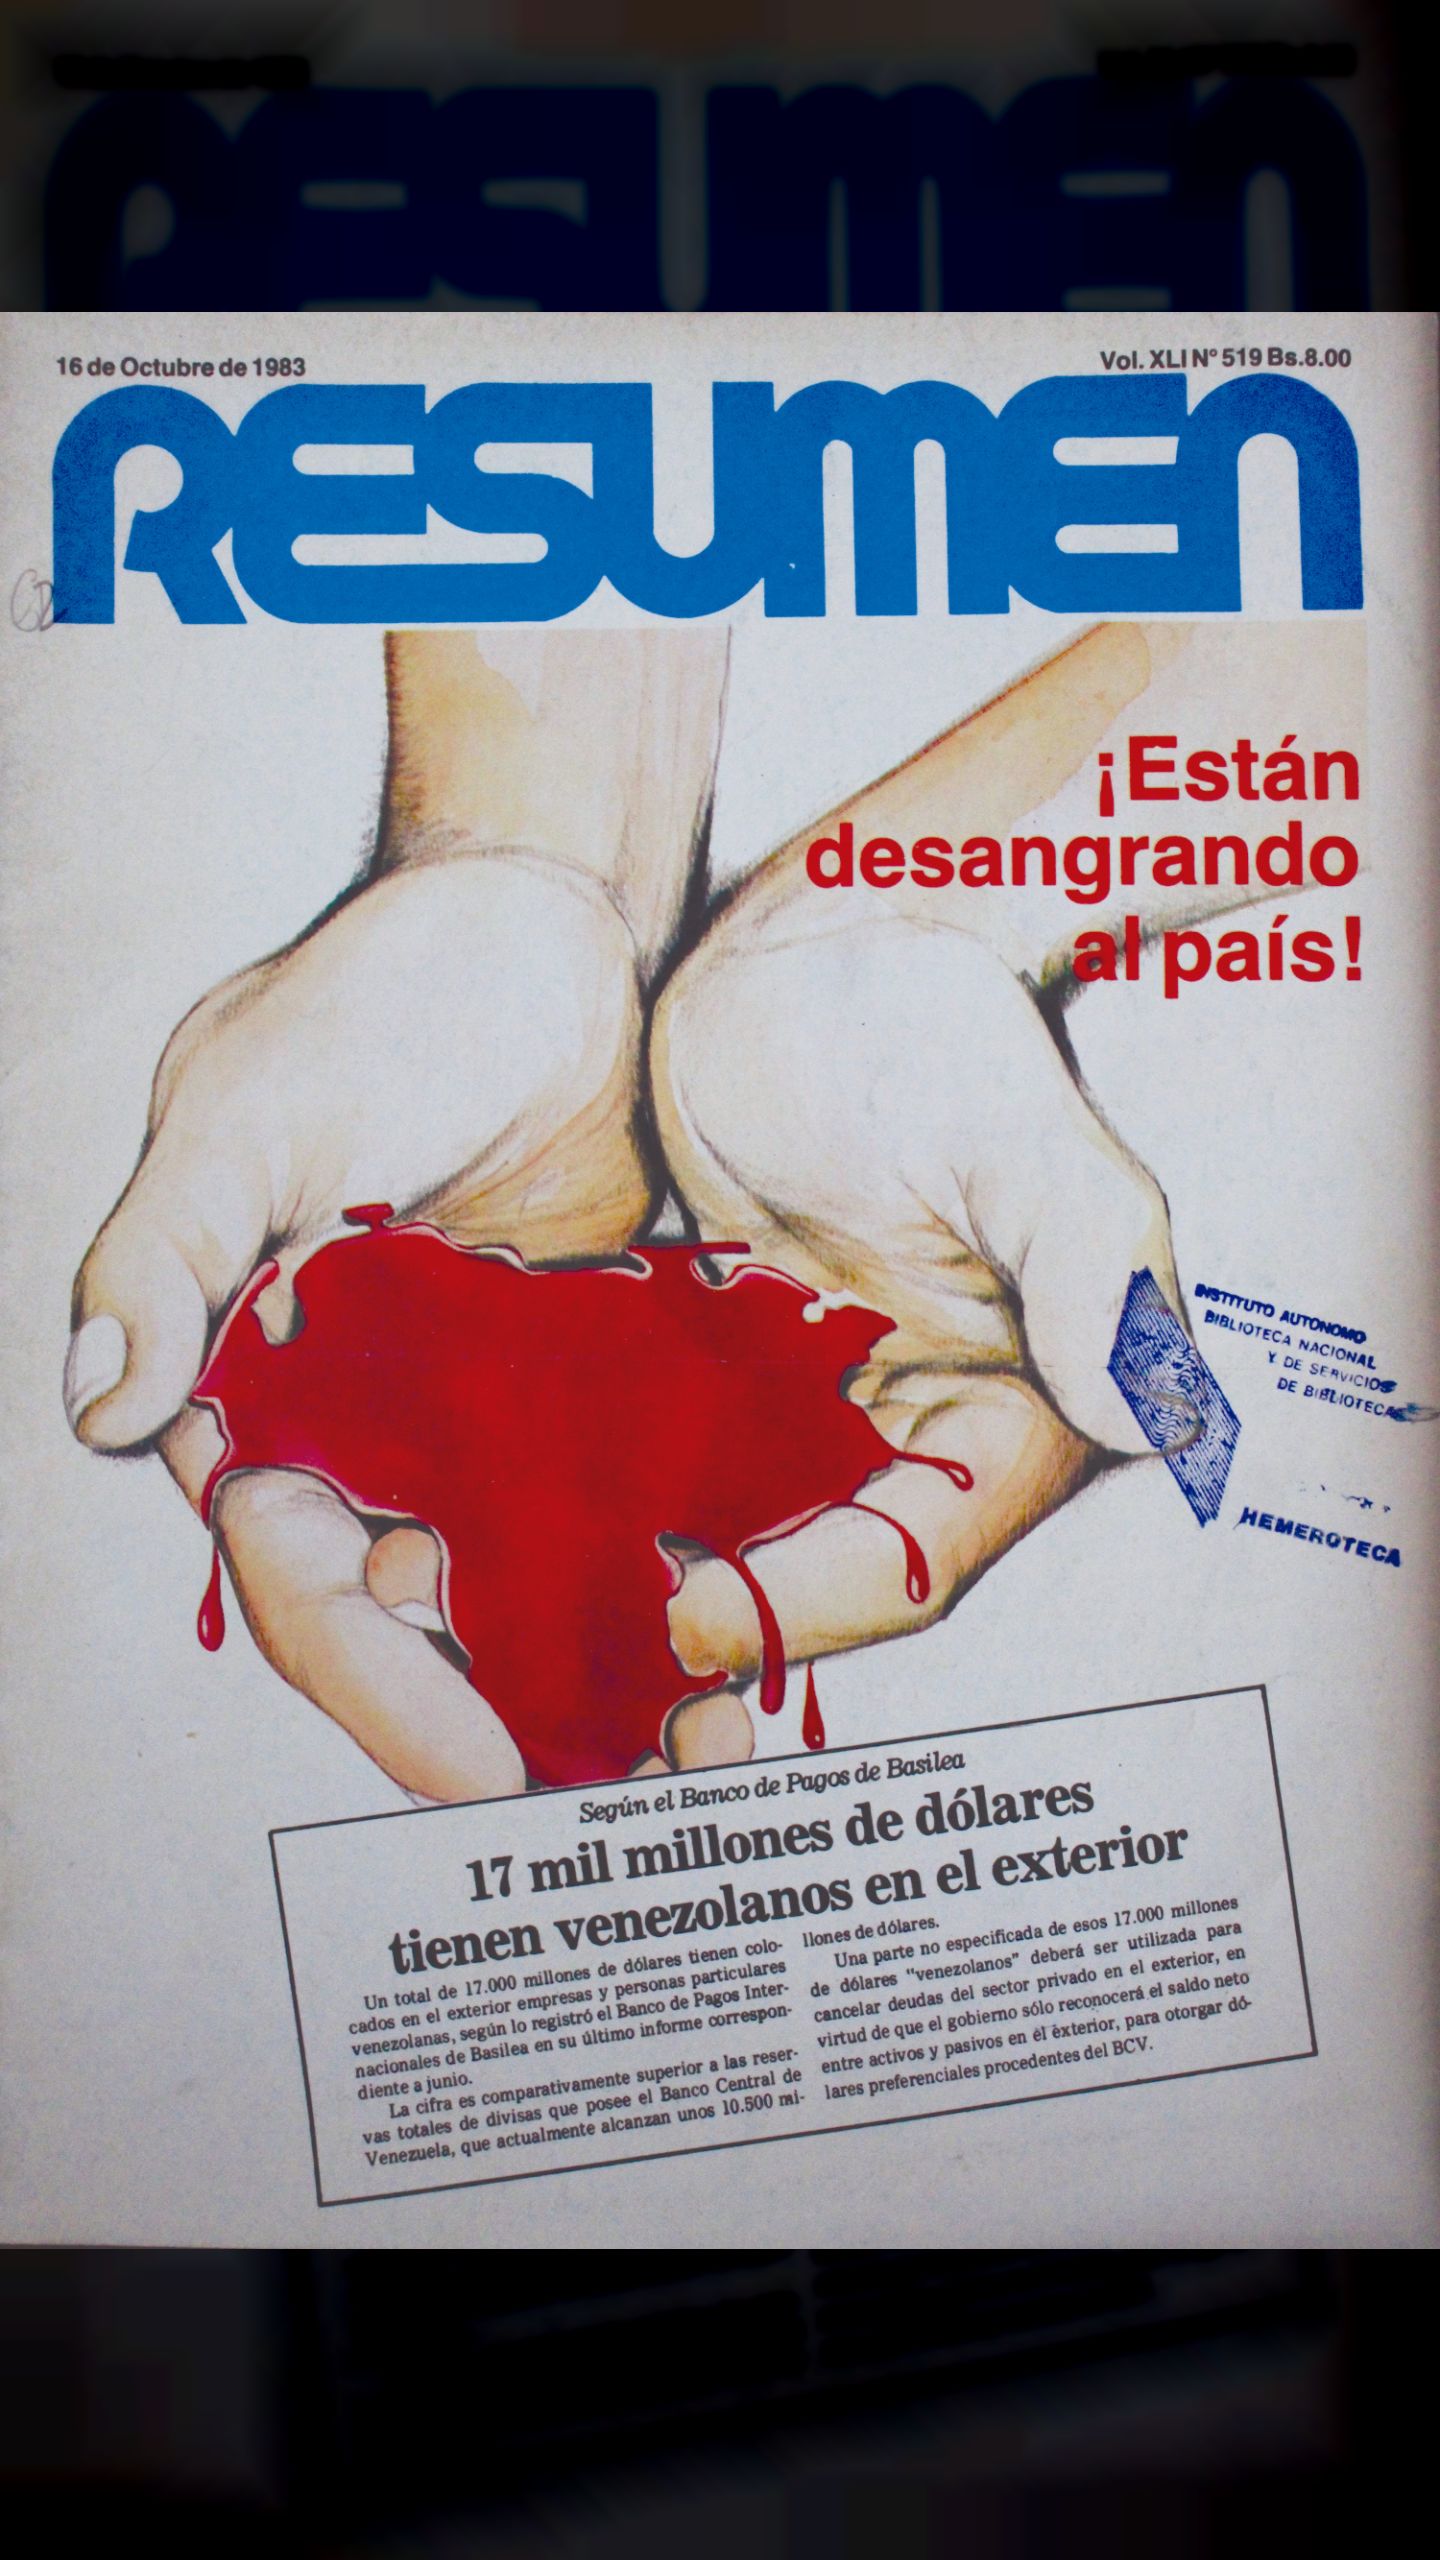 17 mil millones de dólares tienen venezolanos en el exterior (Revista Resumen, 16 de octubre 1983)